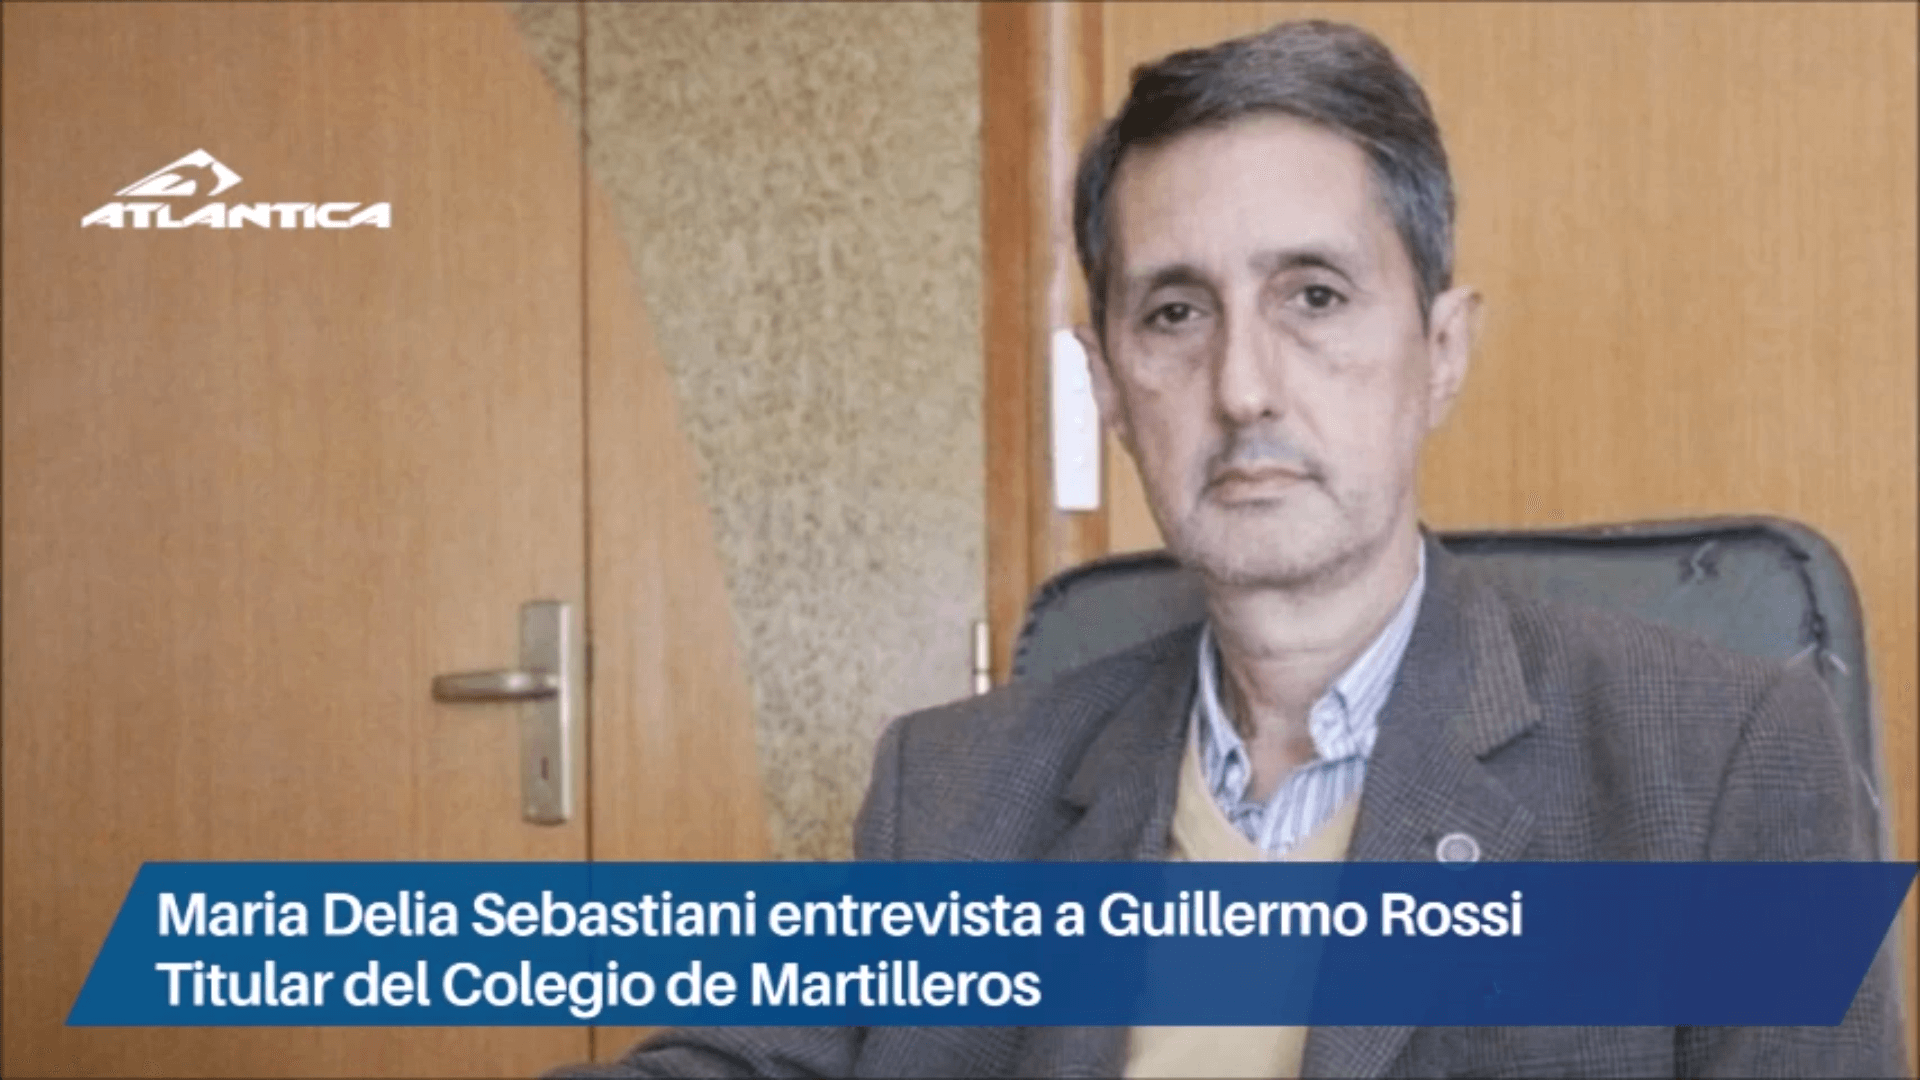 Maria Delia Sebastiani entrevista a Guillermo Rossi – Titular del Colegio de Martilleros